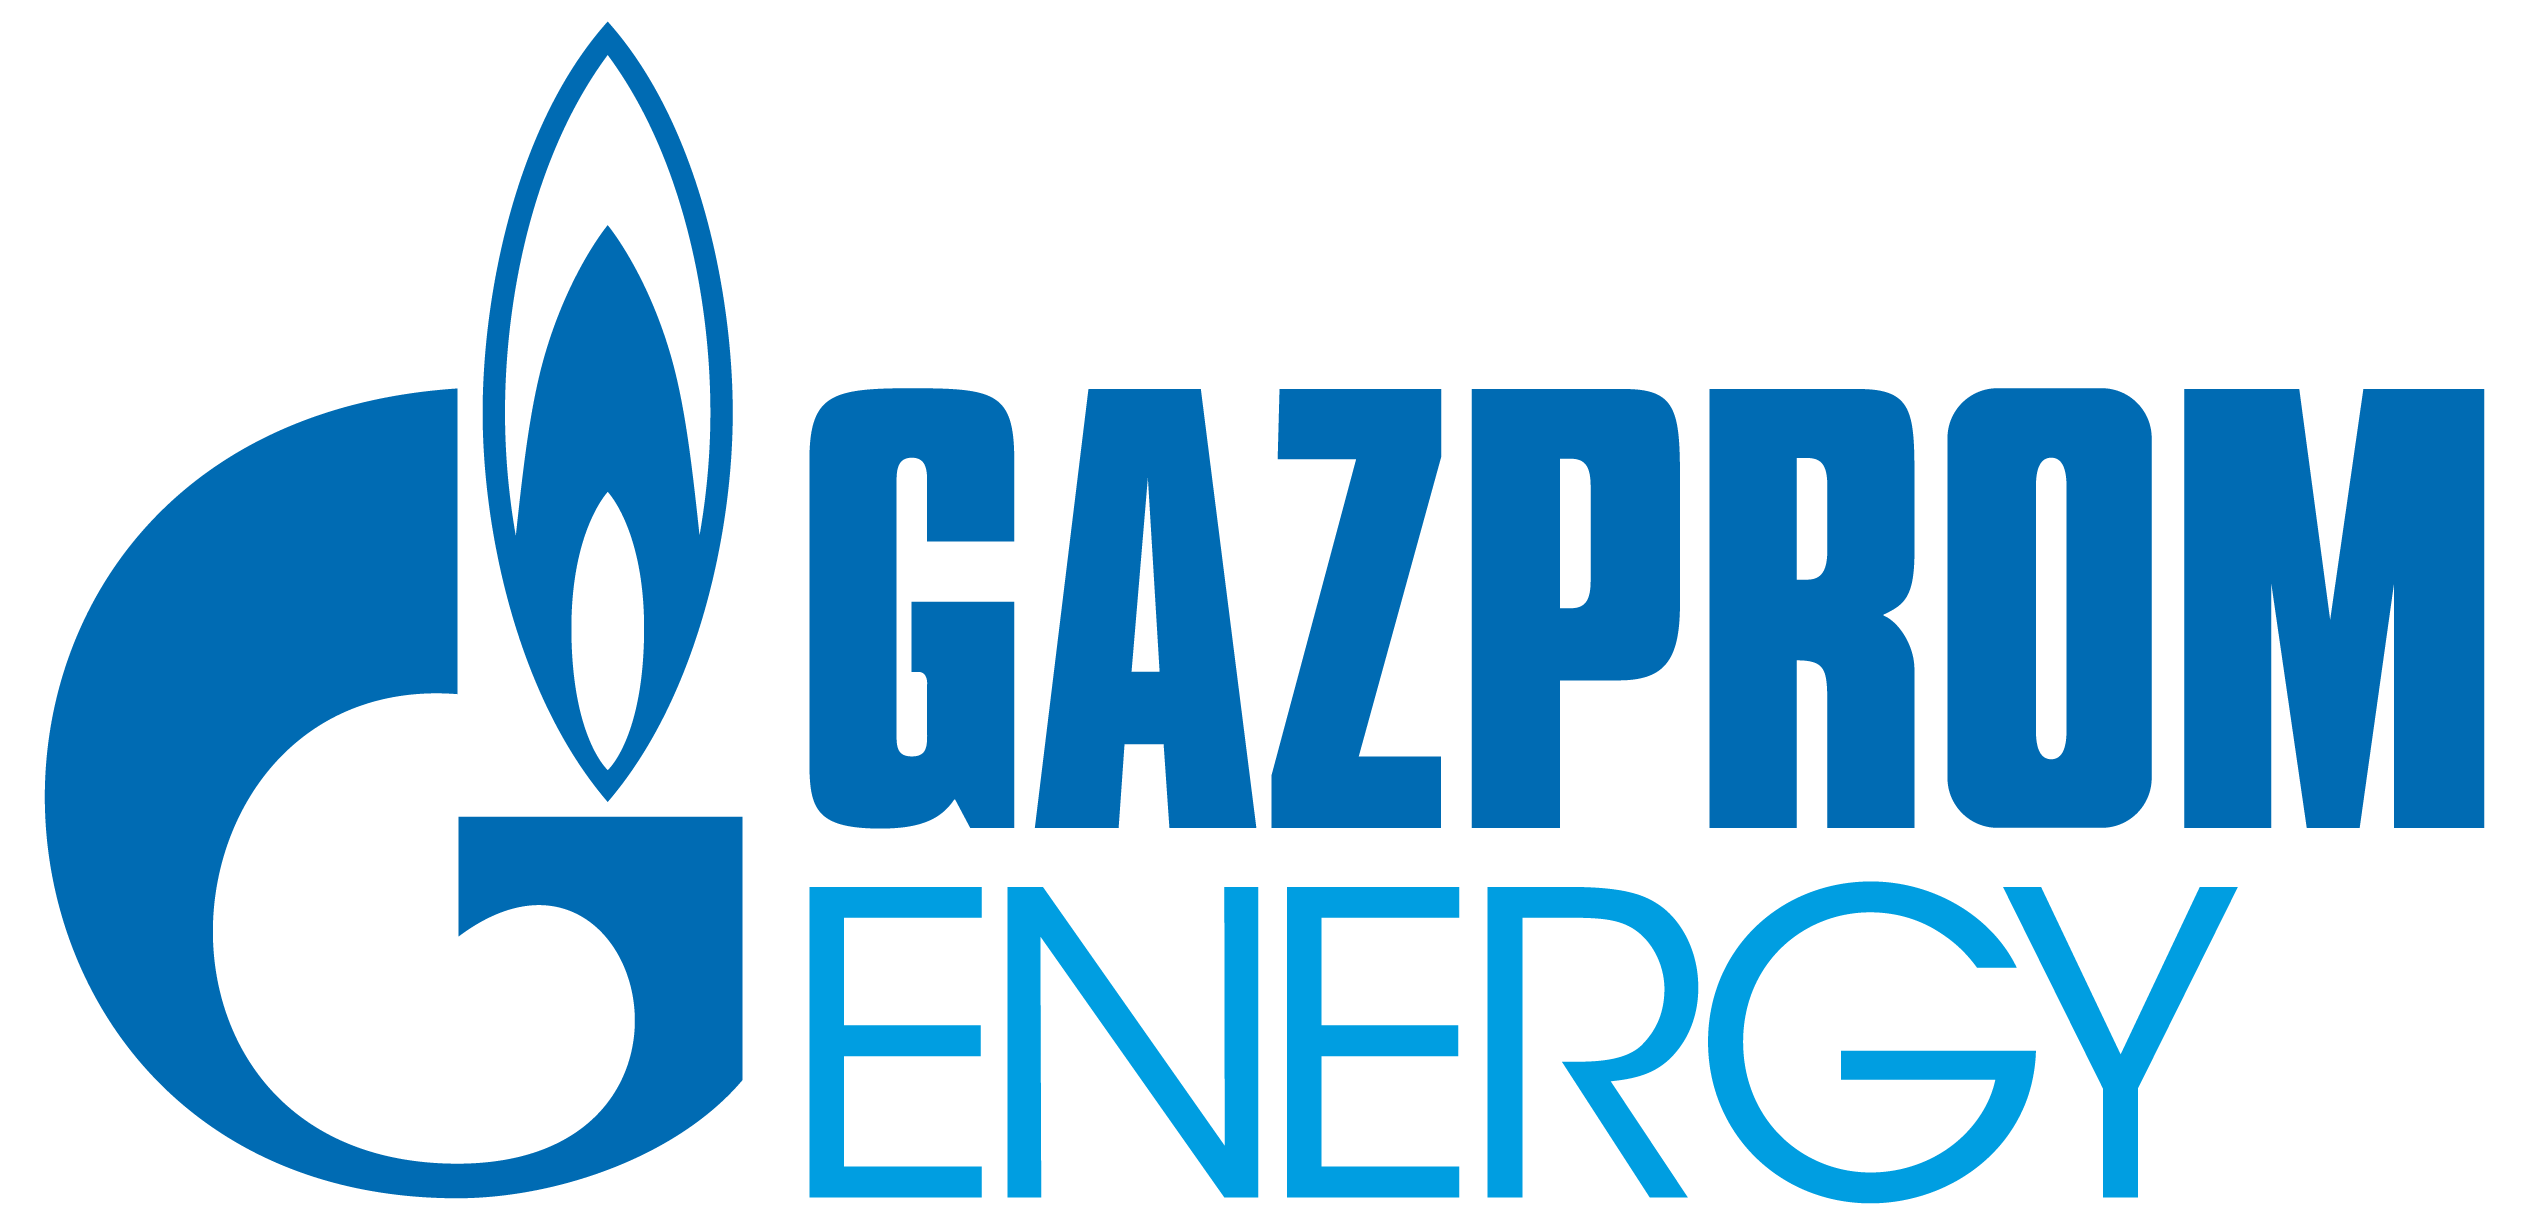 Energieleverancier Gazprom Energy